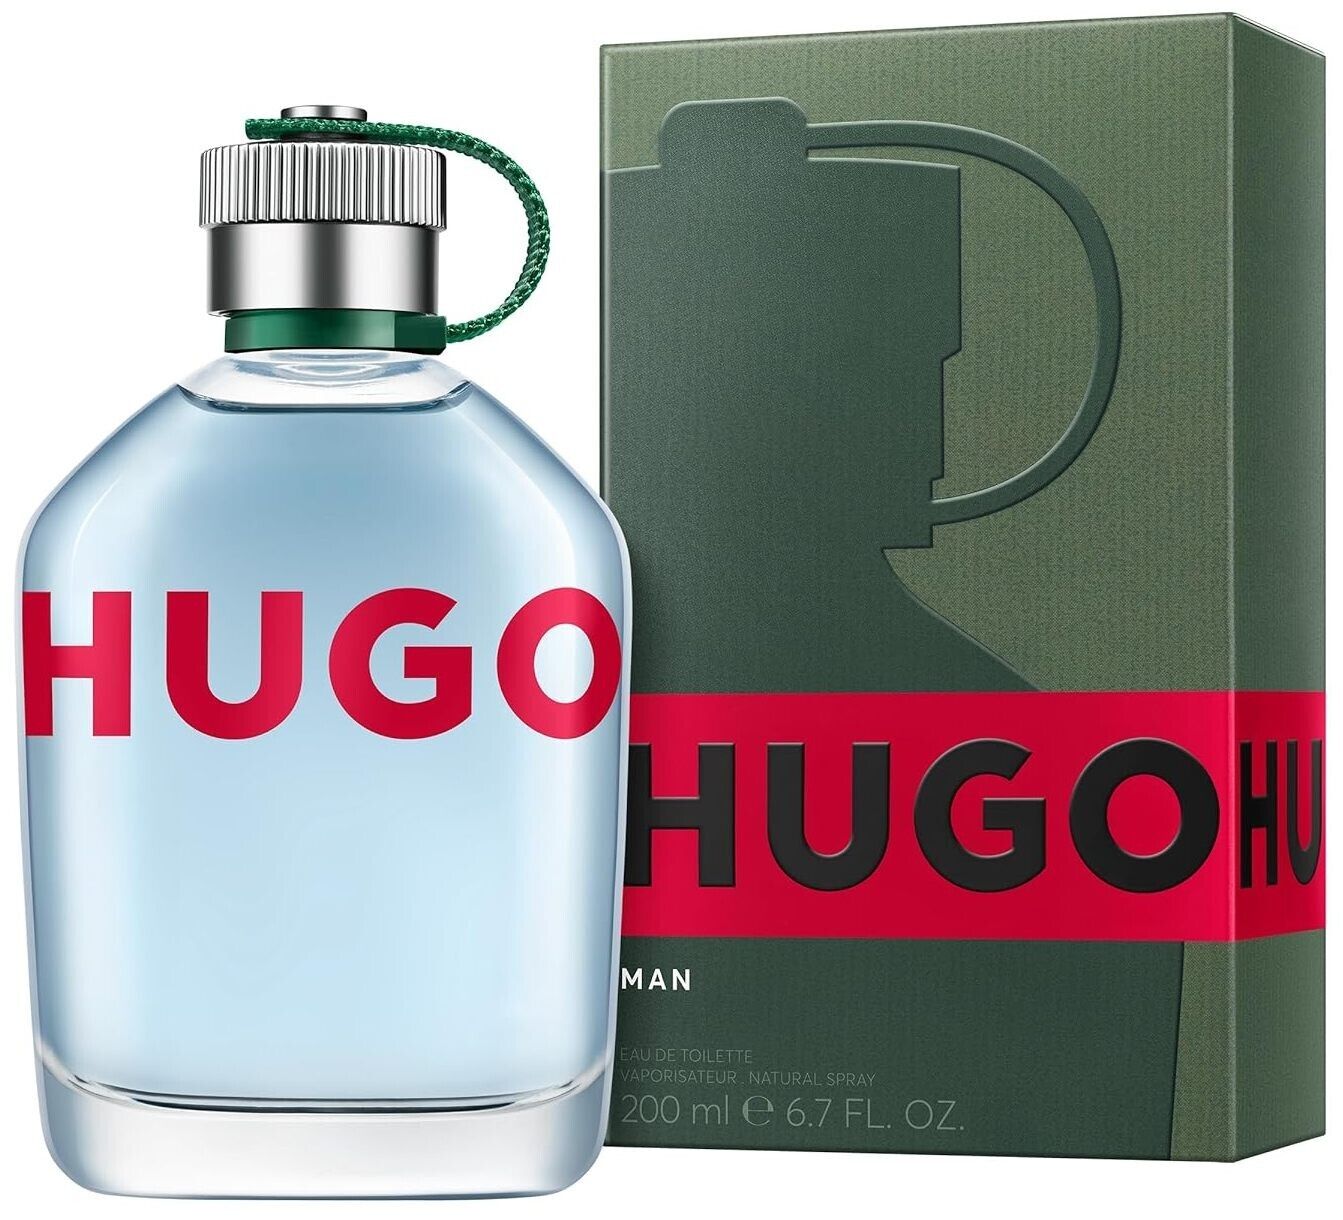 HUGO MAN by Hugo Boss cologne for men EDT 6.7 / 6.8 oz New In Box